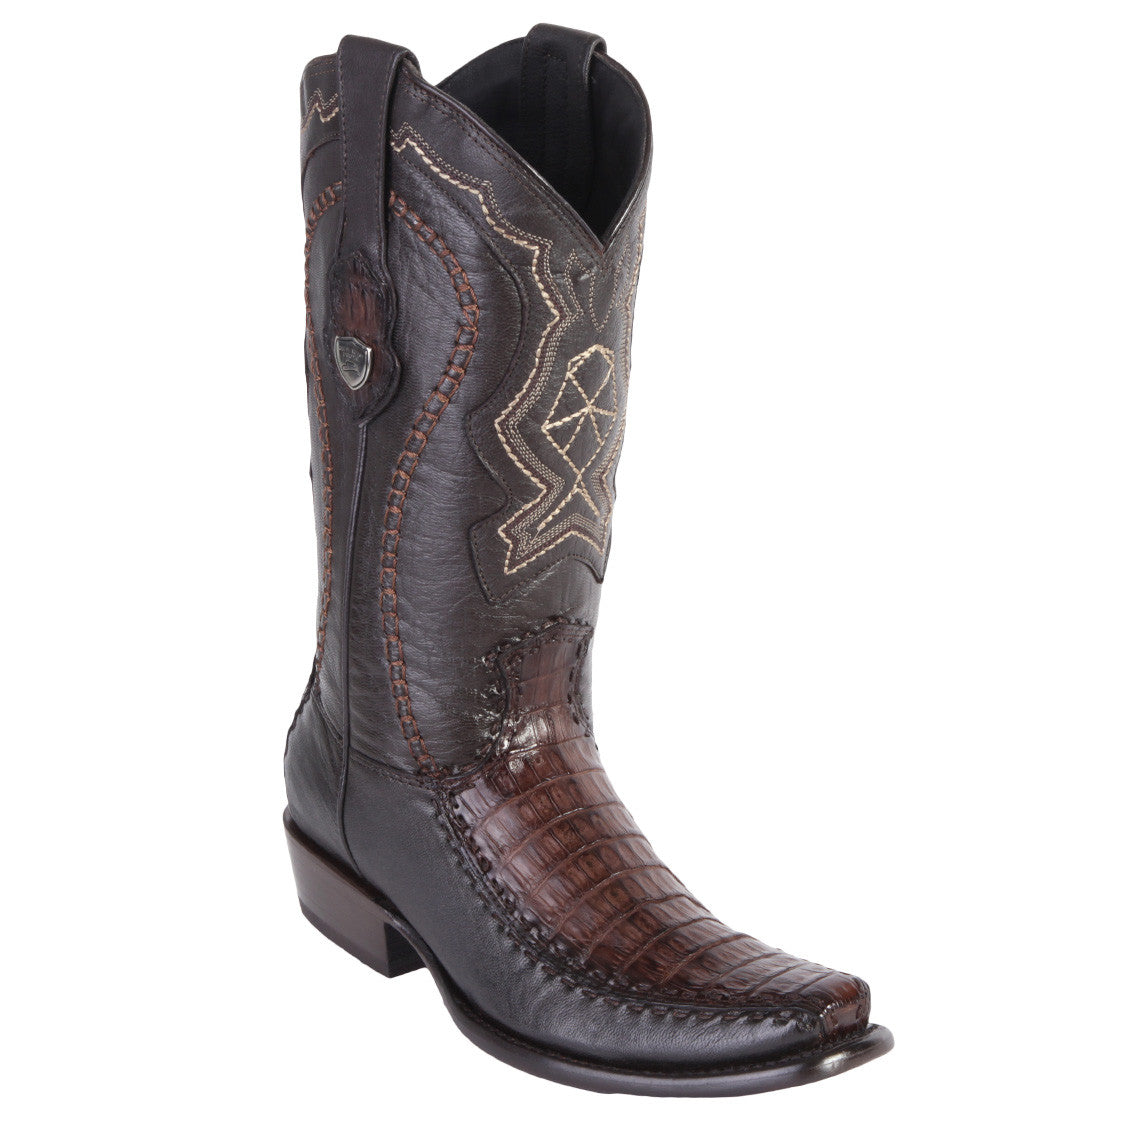 Wild West brown western boots